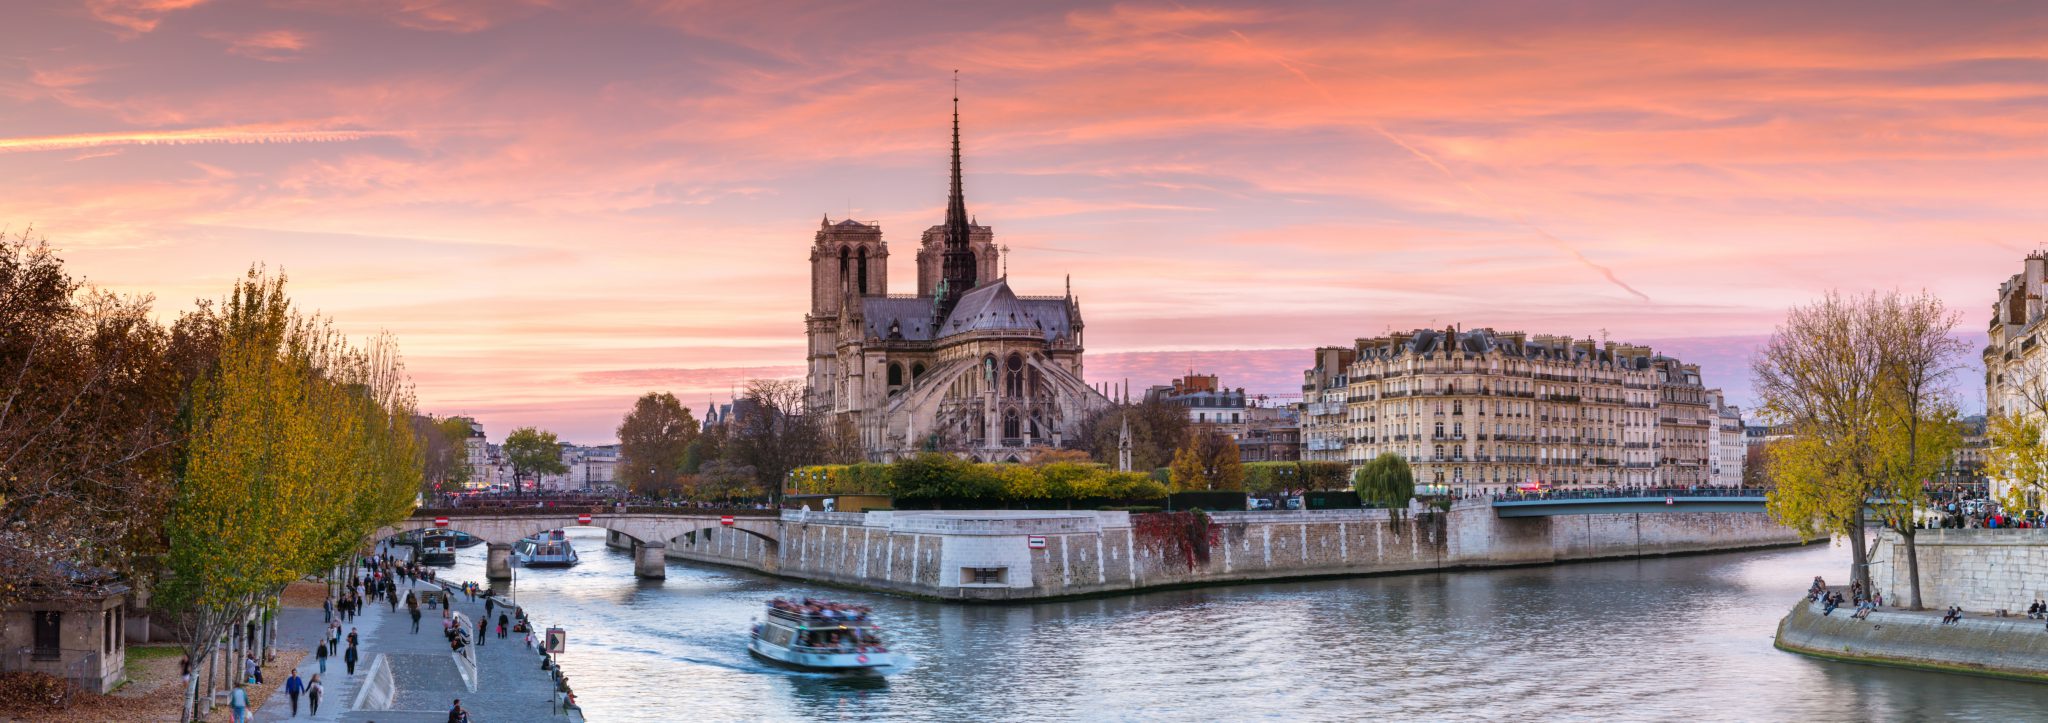 Notre Dame The Rebuilding “A Nation’s Effort”